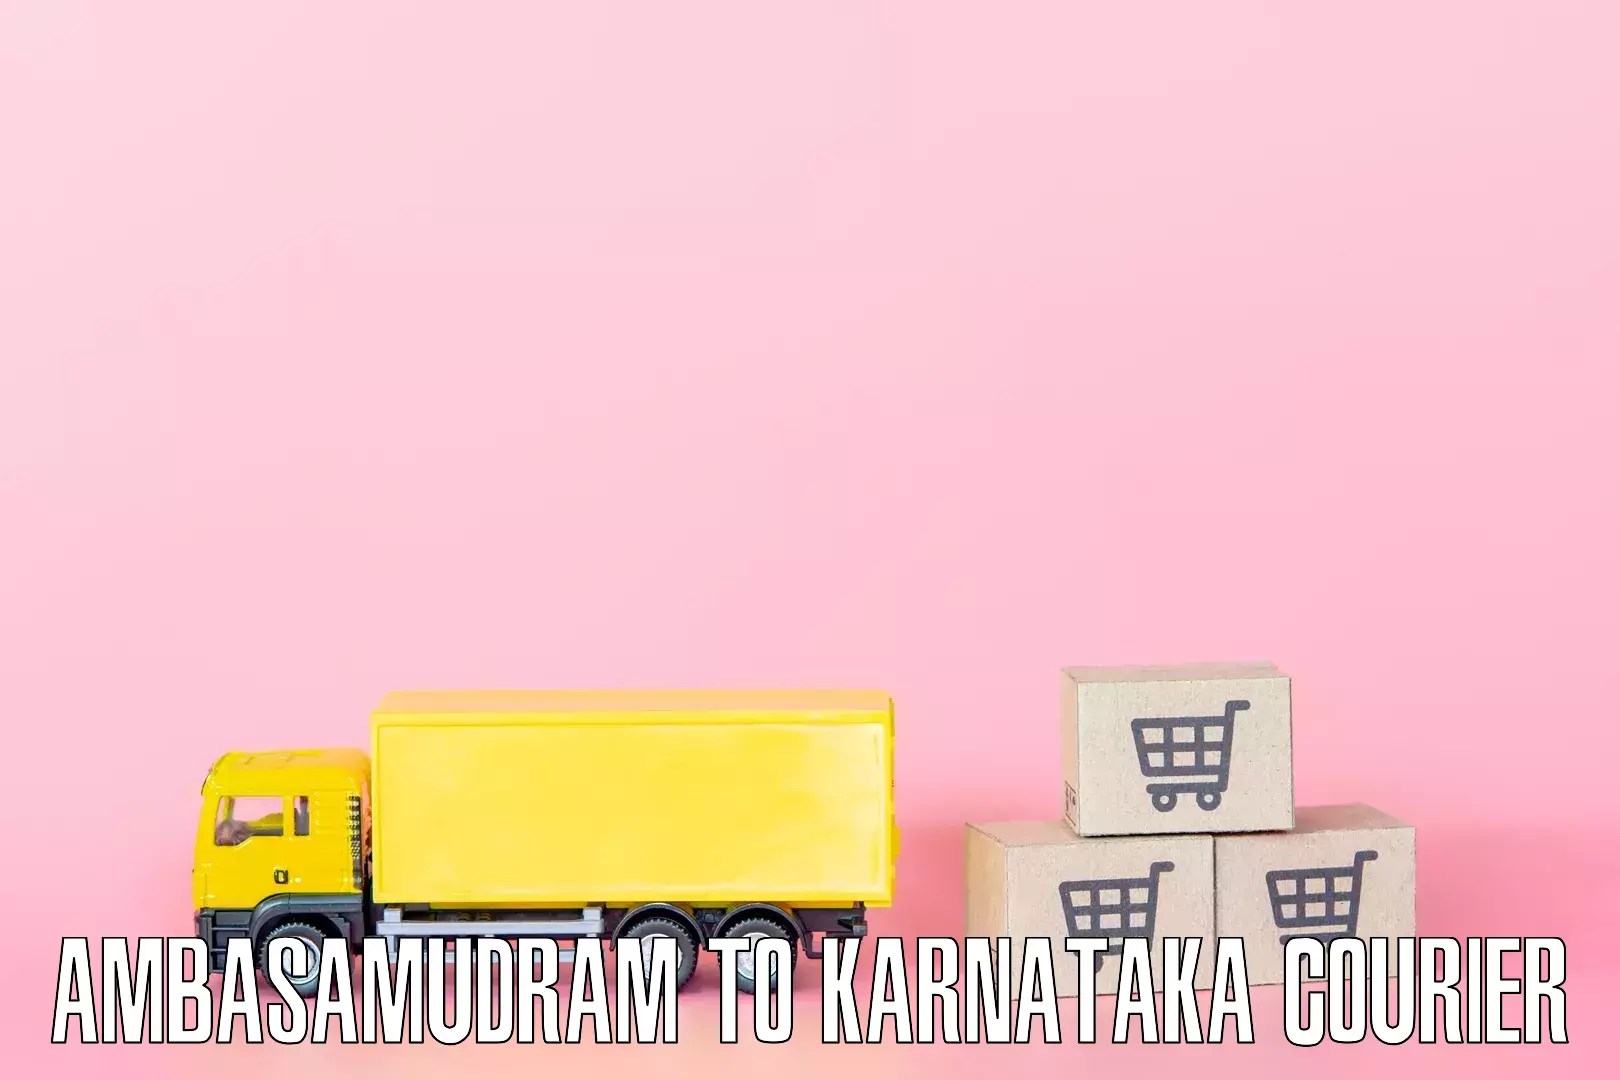 Residential furniture movers Ambasamudram to Karnataka